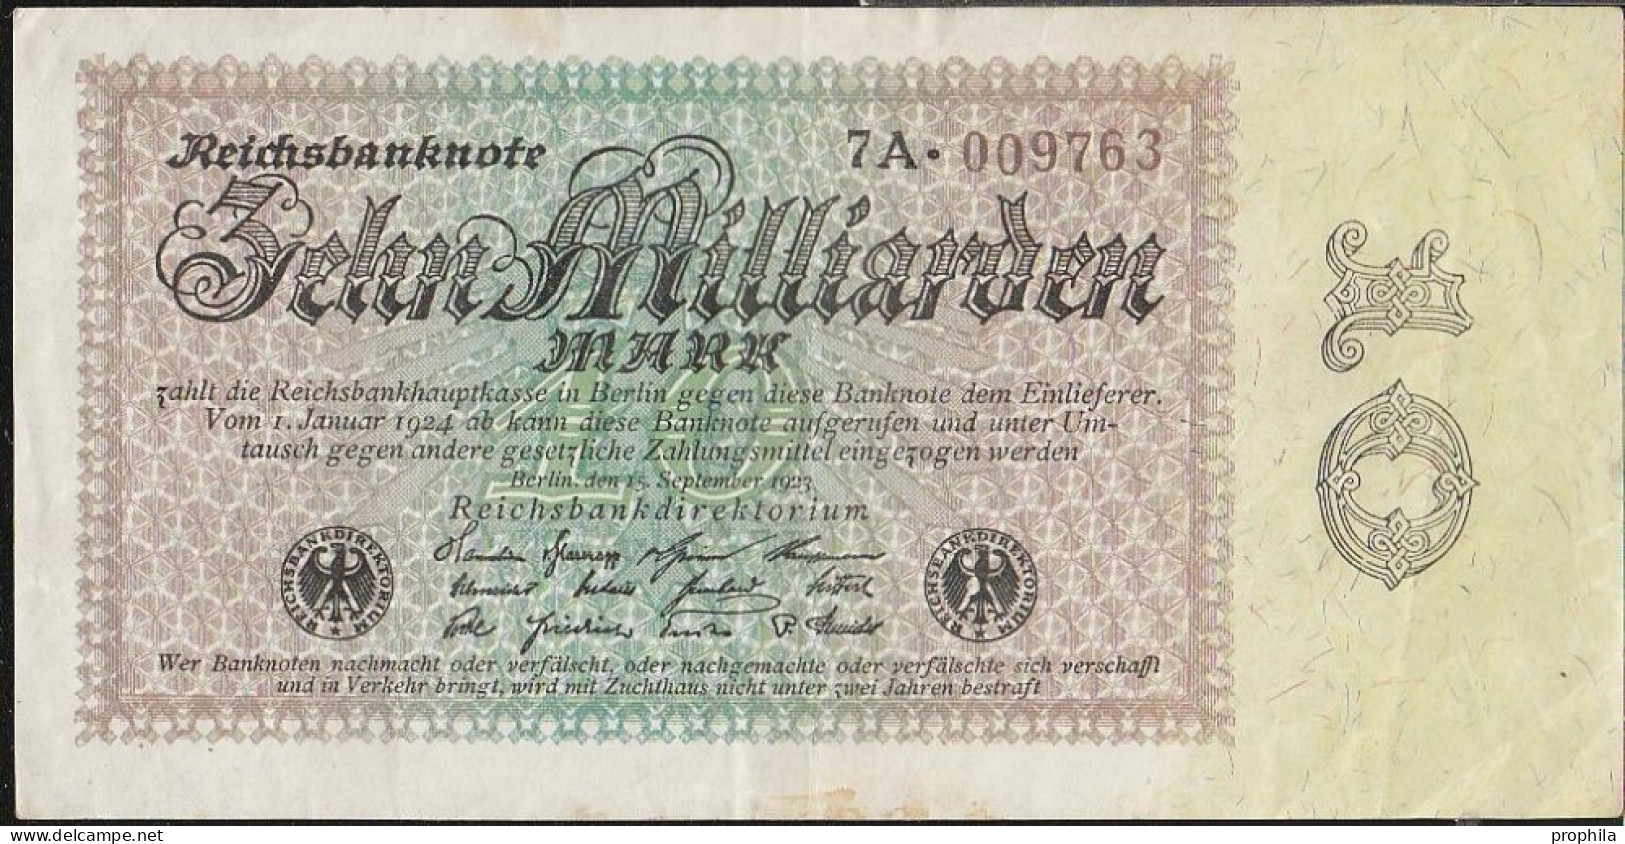 Deutsches Reich Rosenbg: 113c Wasserzeichen Disteln Stark Gebraucht (IV) 1923 10 Milliarden Mark - 10 Miljard Mark